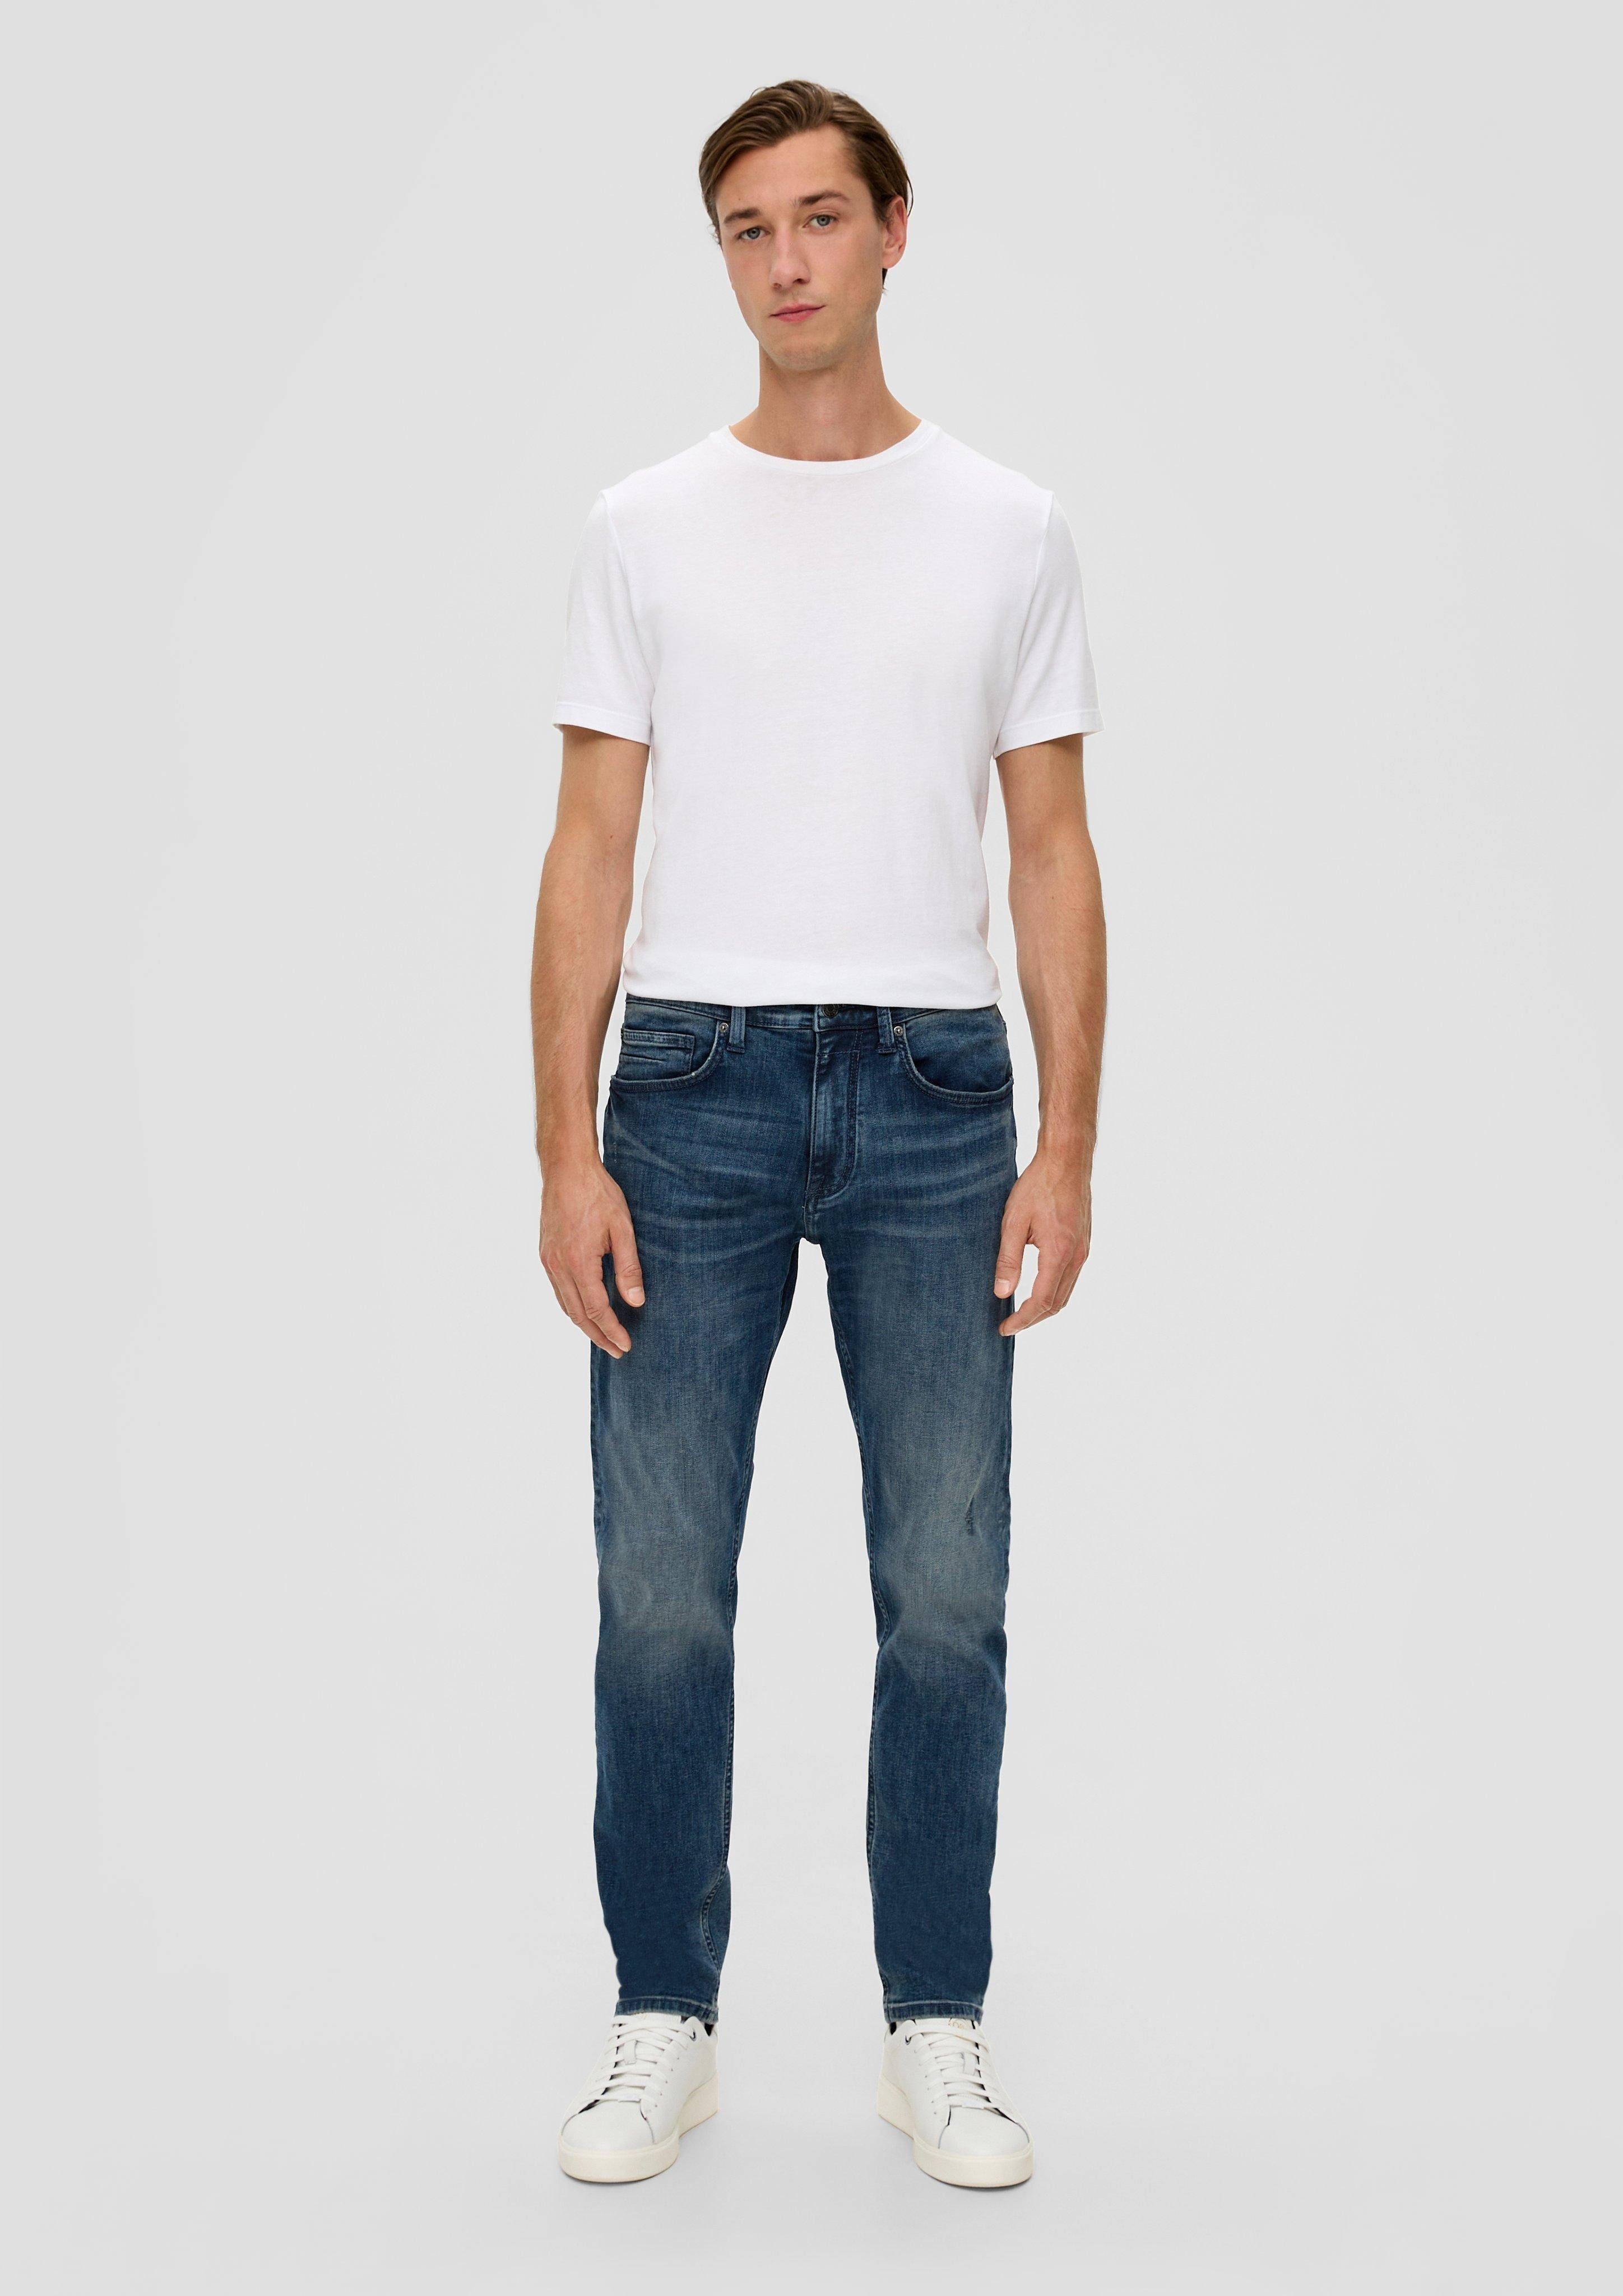 / / 5-Pocket-Stil s.Oliver Fit / Leg Mid Rise / dunkelblau Tapered Jeans Leder-Patch, Regular Waschung Stoffhose